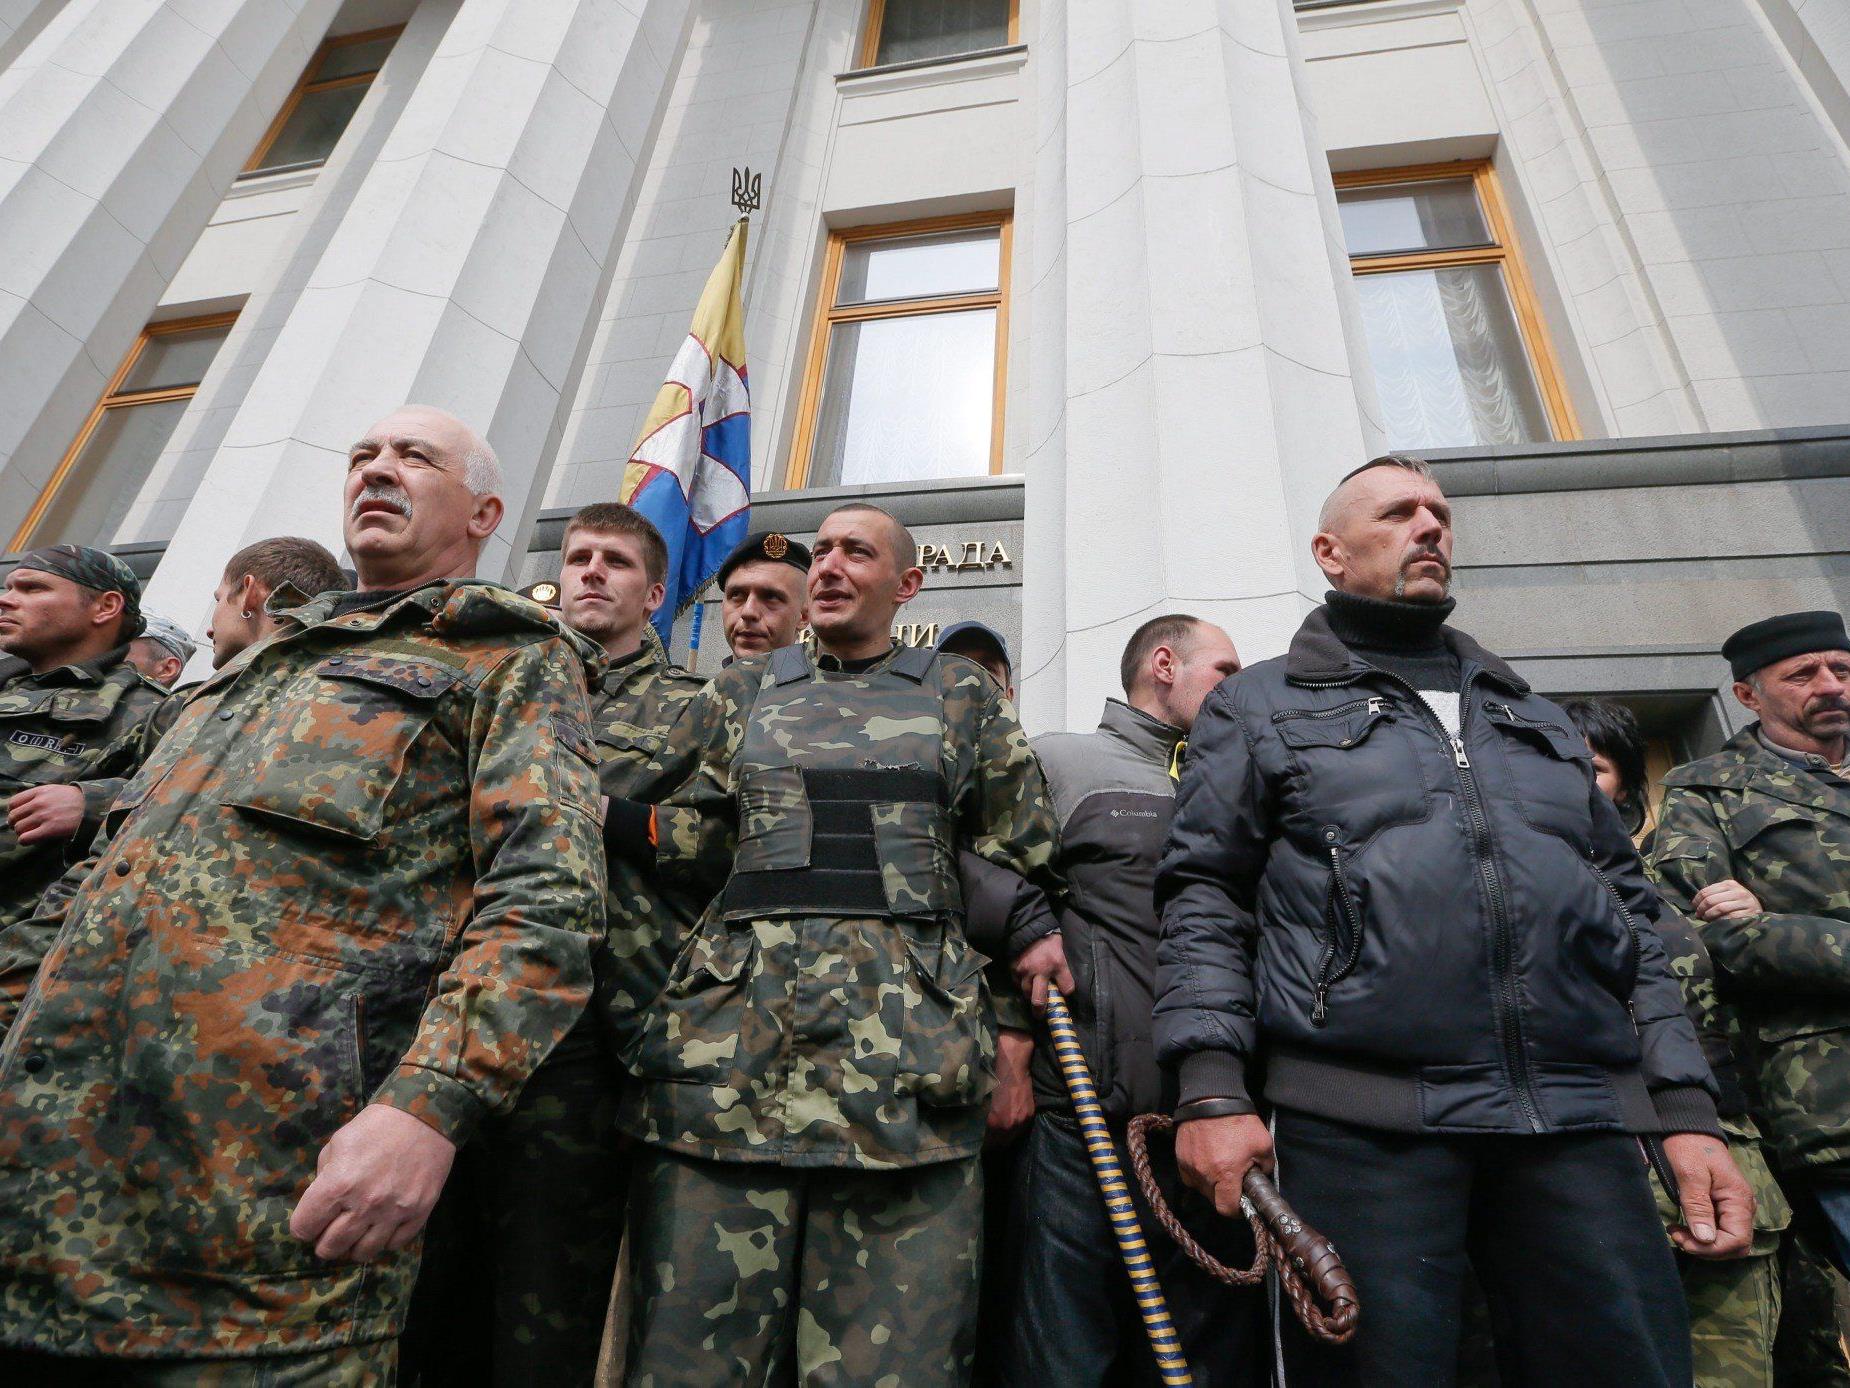 Waffenabgabe von Teilnehmern am "Februarumsturz in Kiew" als erstes im Auge.